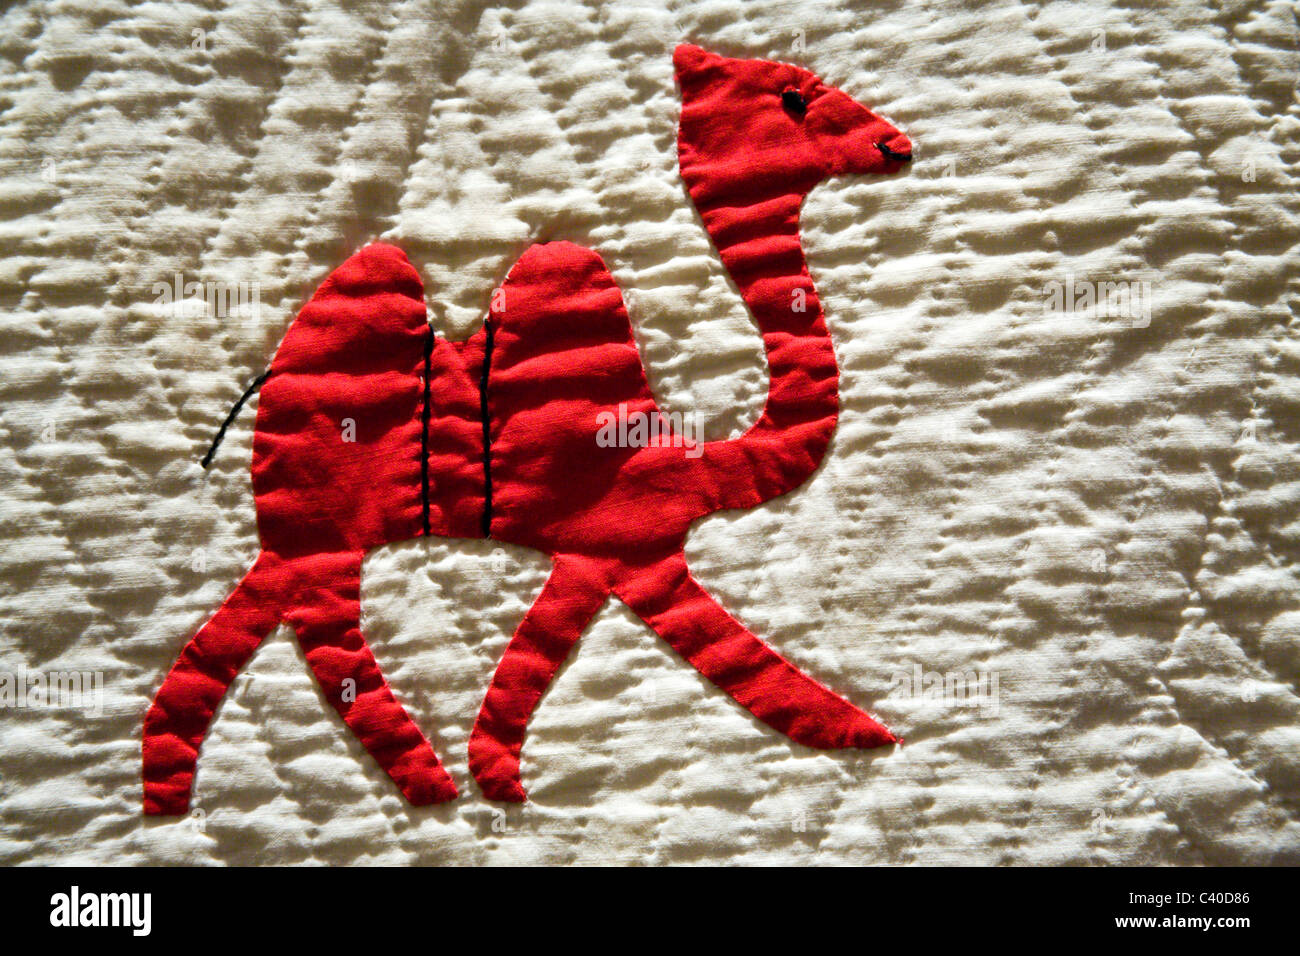 Camel sur une courtepointe rouge et blanc Banque D'Images